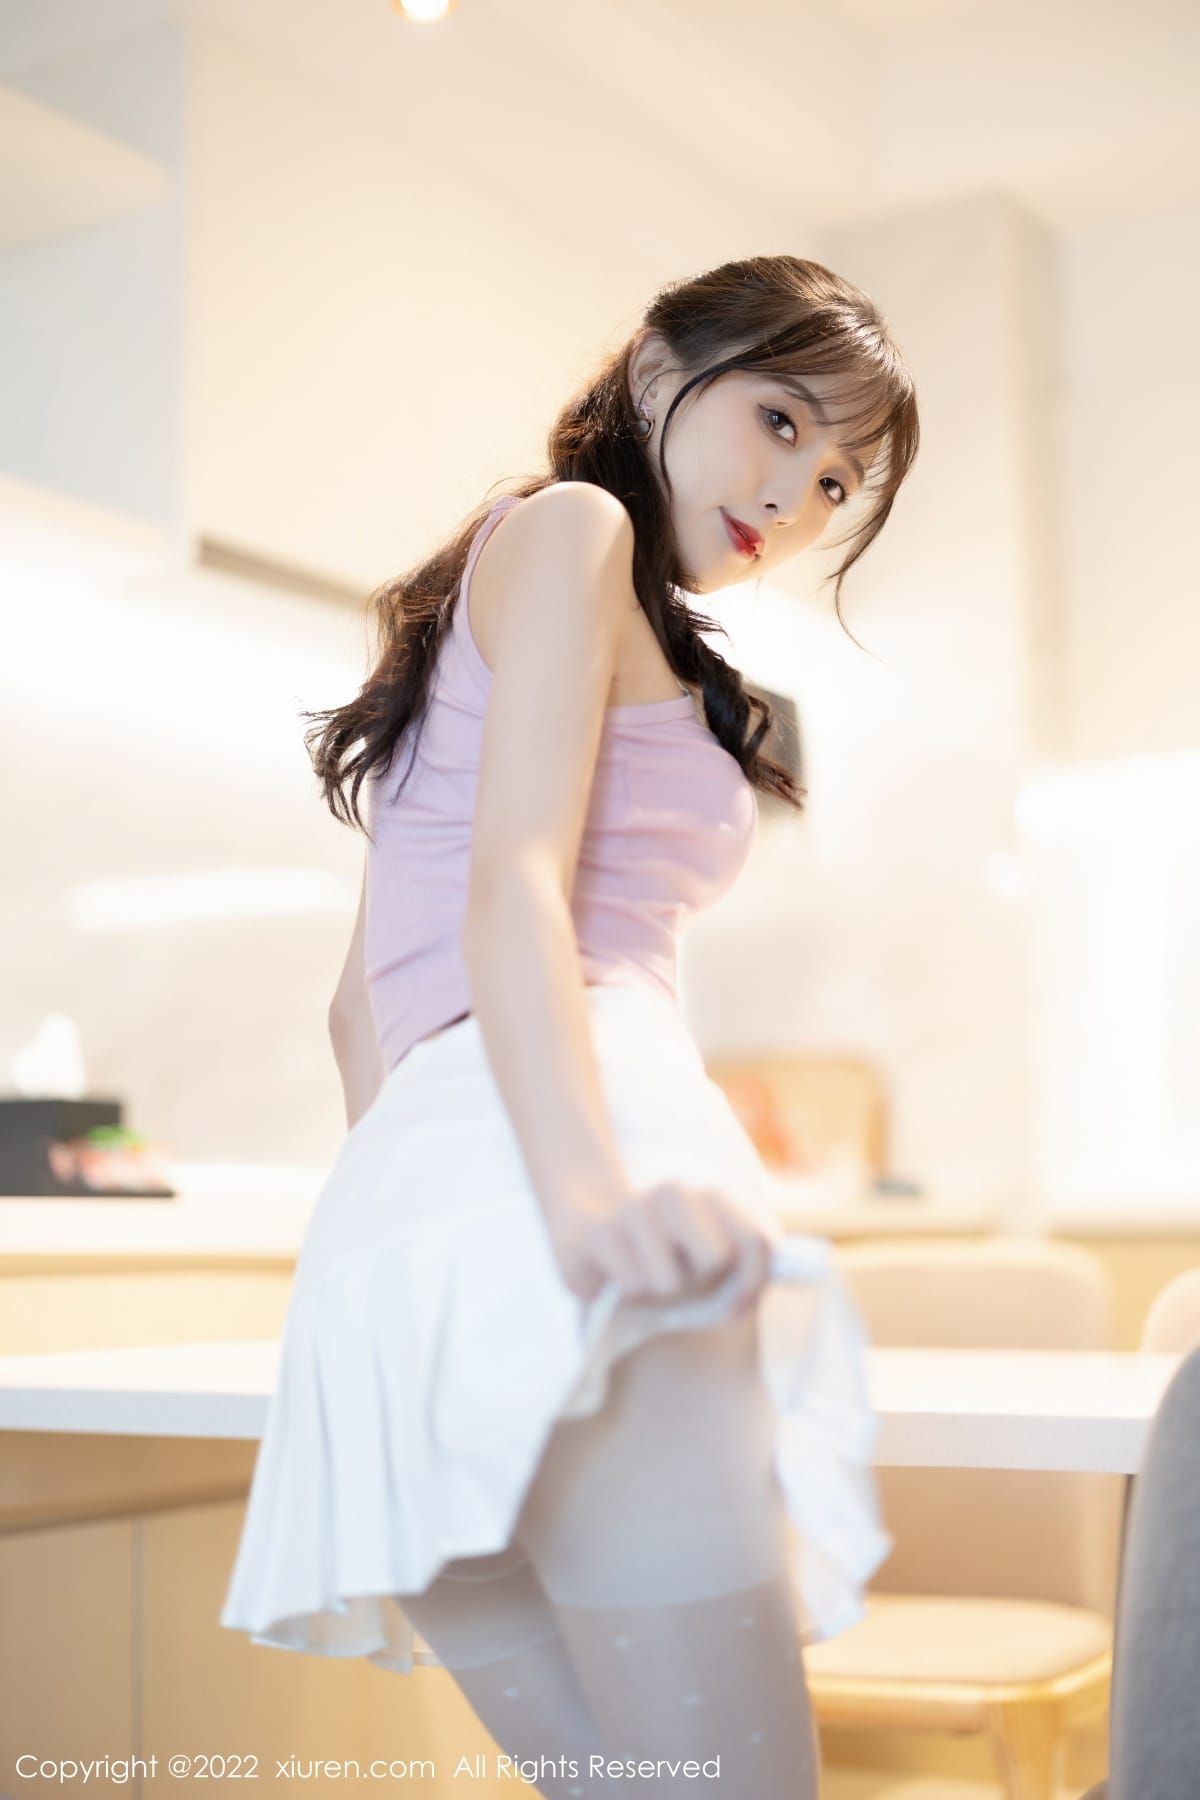 林星阑淡紫色上衣搭配白色短裙诱人写真